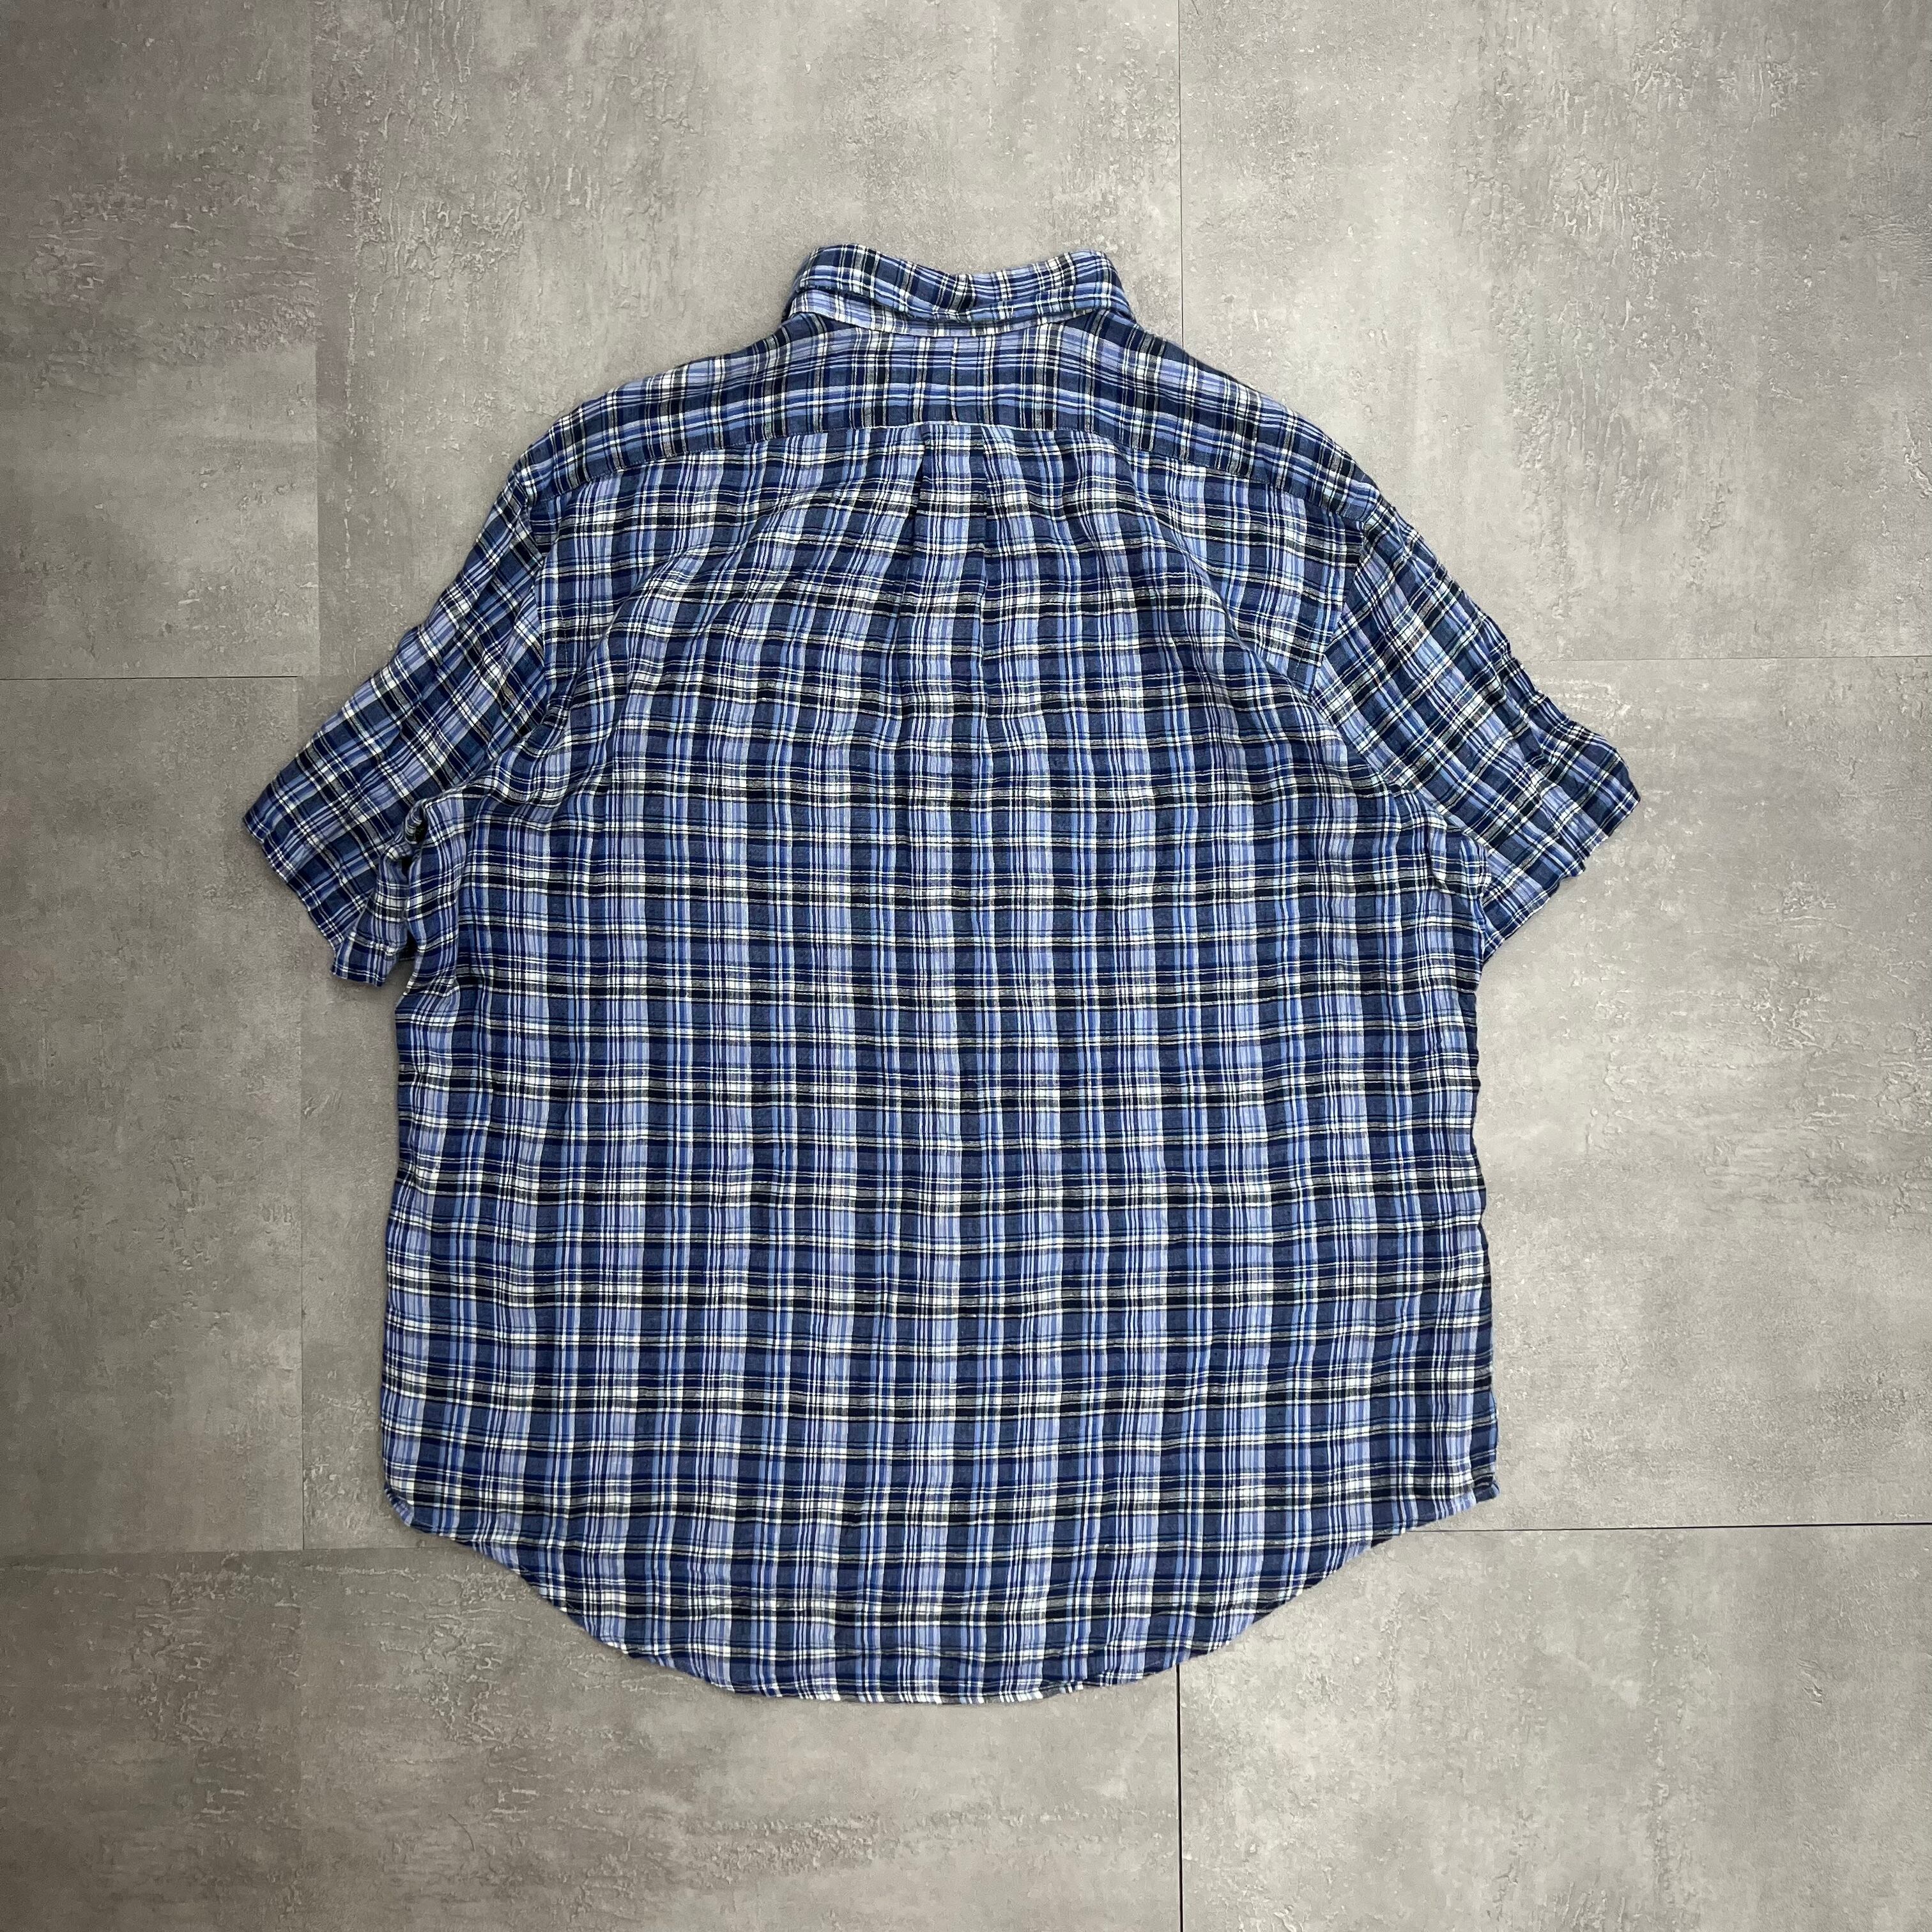 857 Ralph Lauren/ラルフローレン Check Shirts/チェックシャツ サイズ